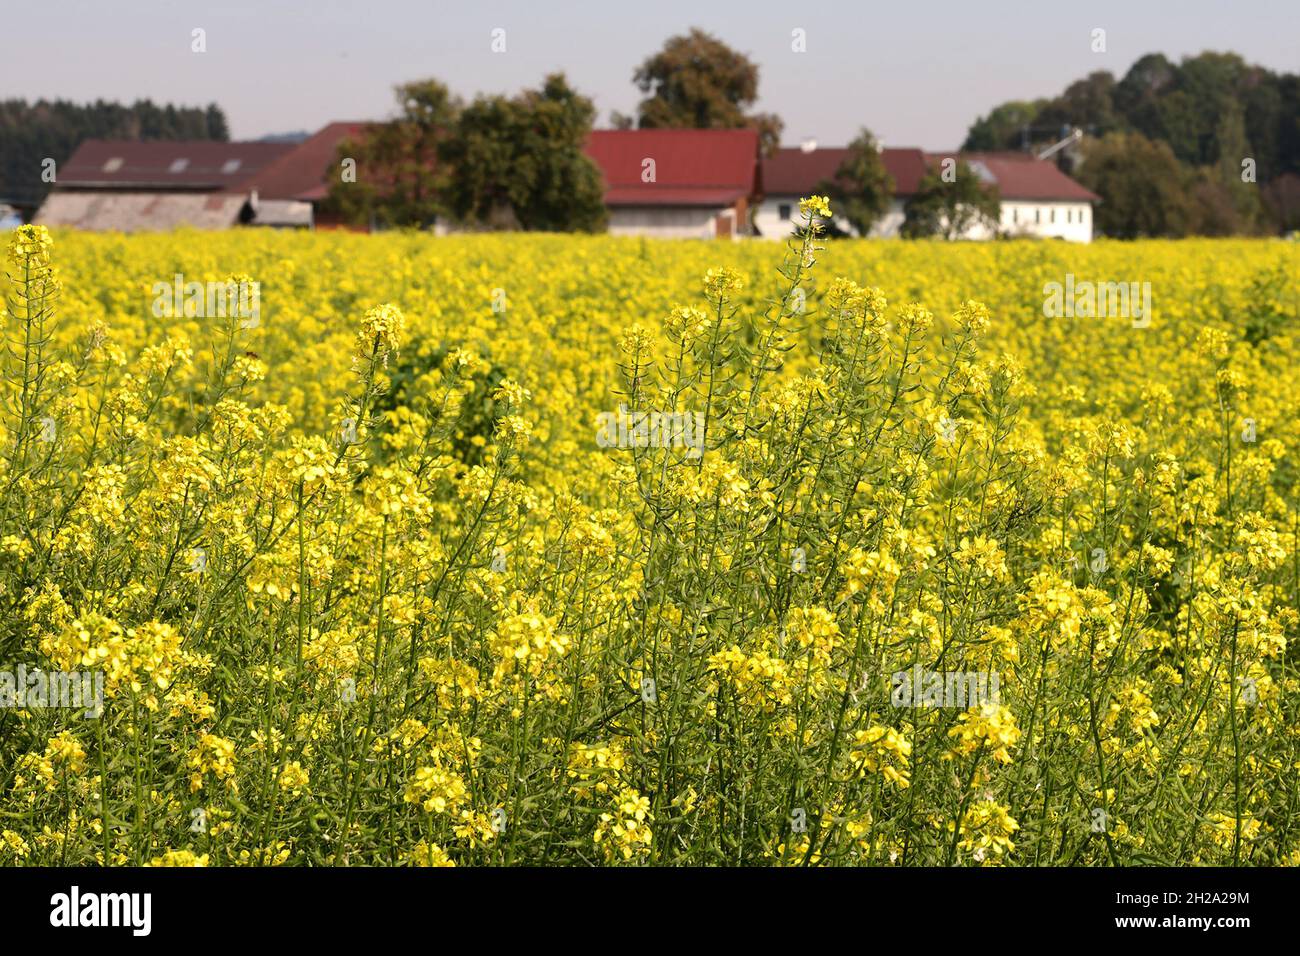 Ein Feld mit blühenden Senfpflanzen im Herbst im Salzkammergut - Senf ist ein scharfes Gewürz, das aus den Samenkörnern des Weißen, Braunen und des Sc Stock Photo